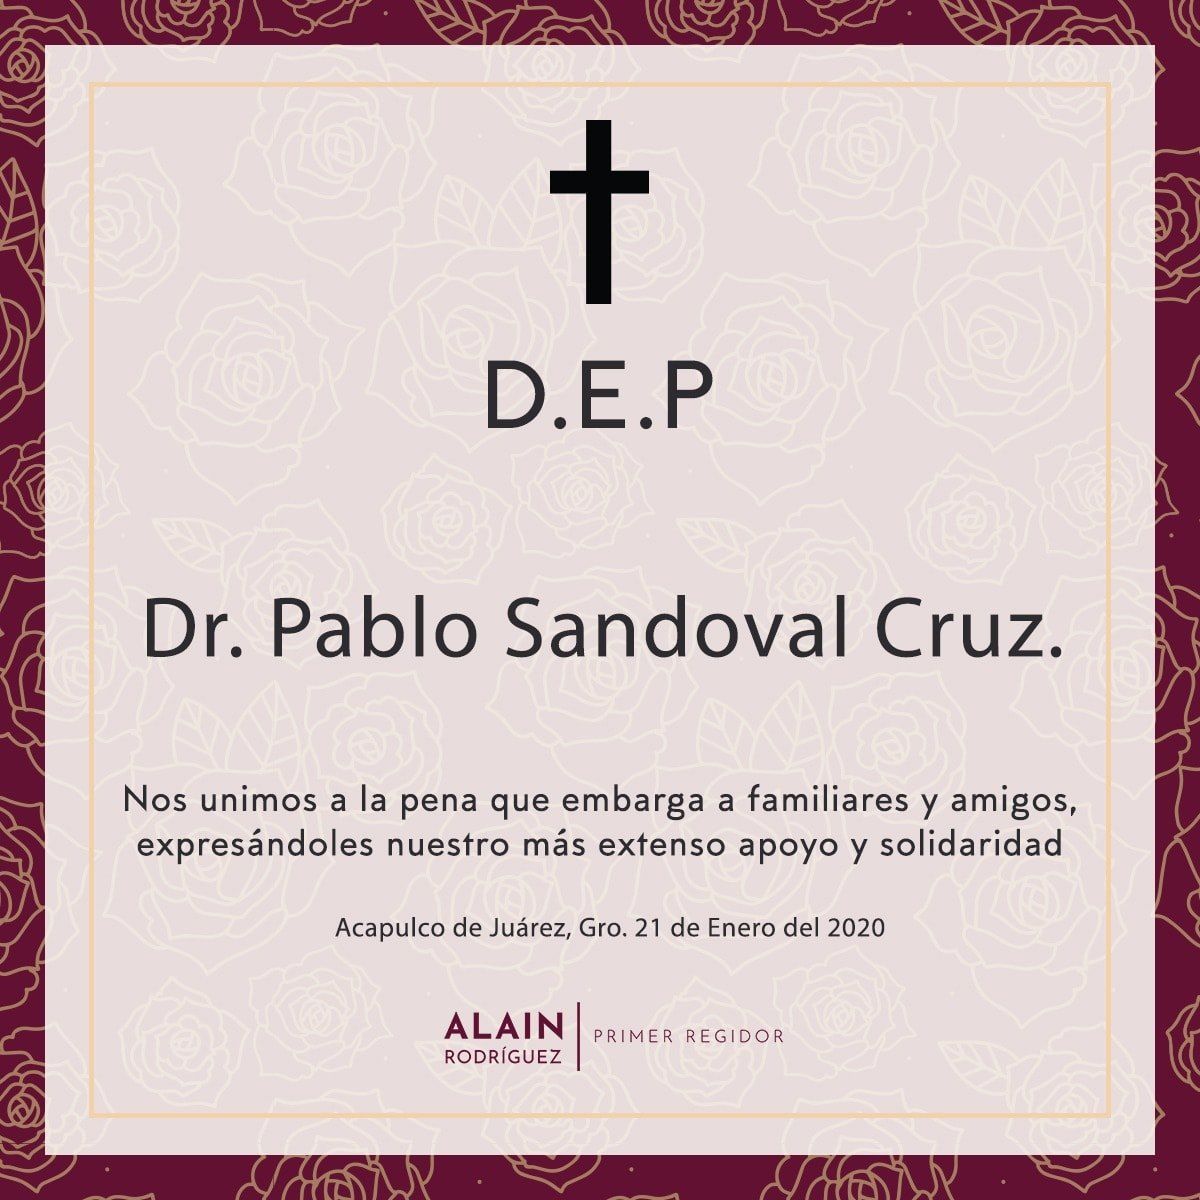 Alain Rodríguez se suma a las oraciones para despedir a Don Pablo Sandoval